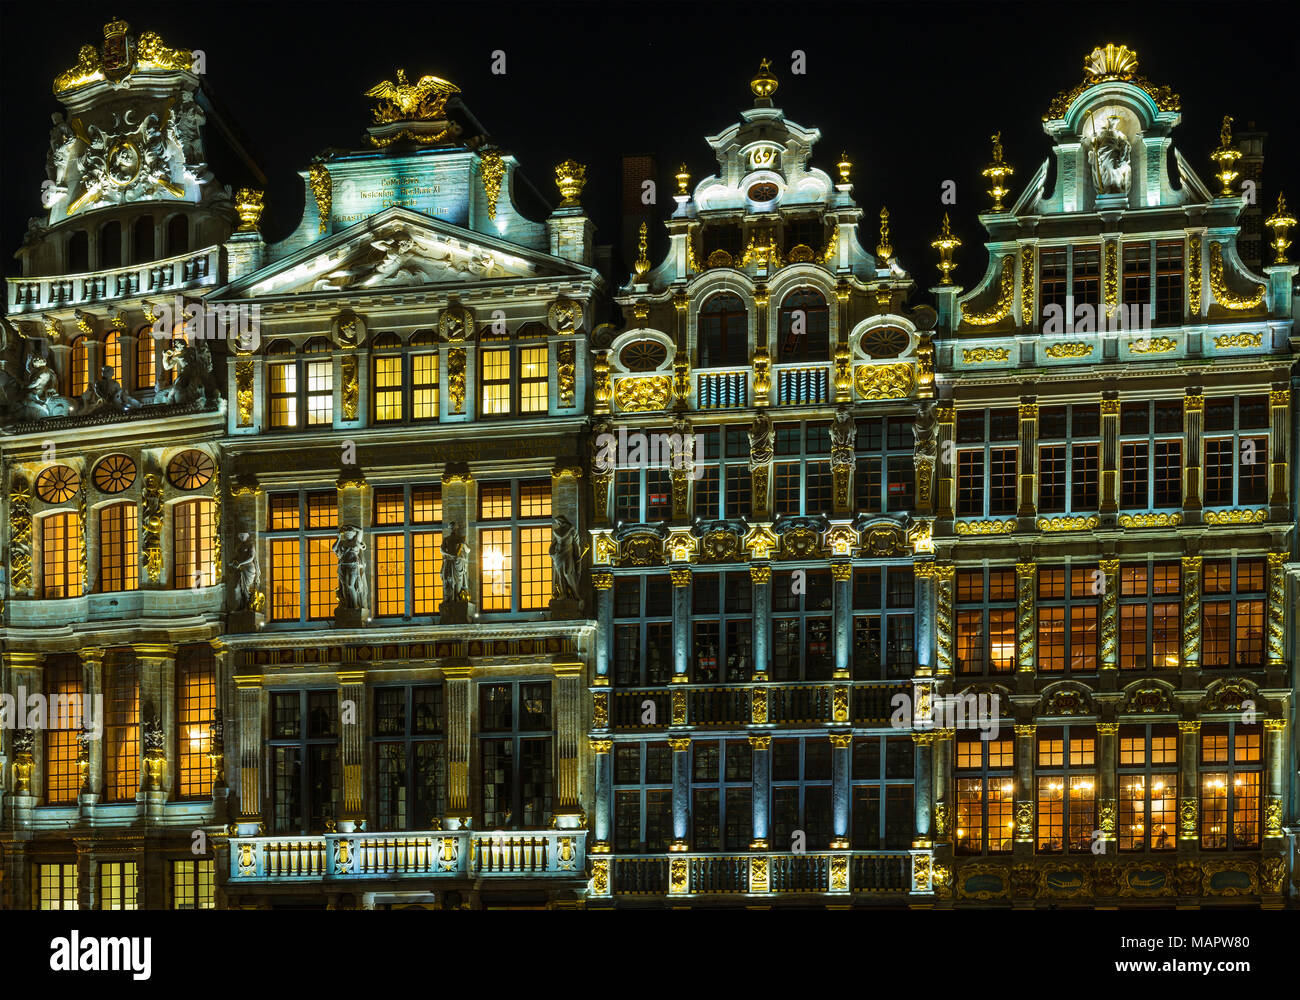 Die Fassaden der Häuser des Grand Place oder Hauptplatz von Brüssel beleuchtet in der Nacht im italienischen Barockstil mit flämischen Einflüsse, Belgien. Stockfoto